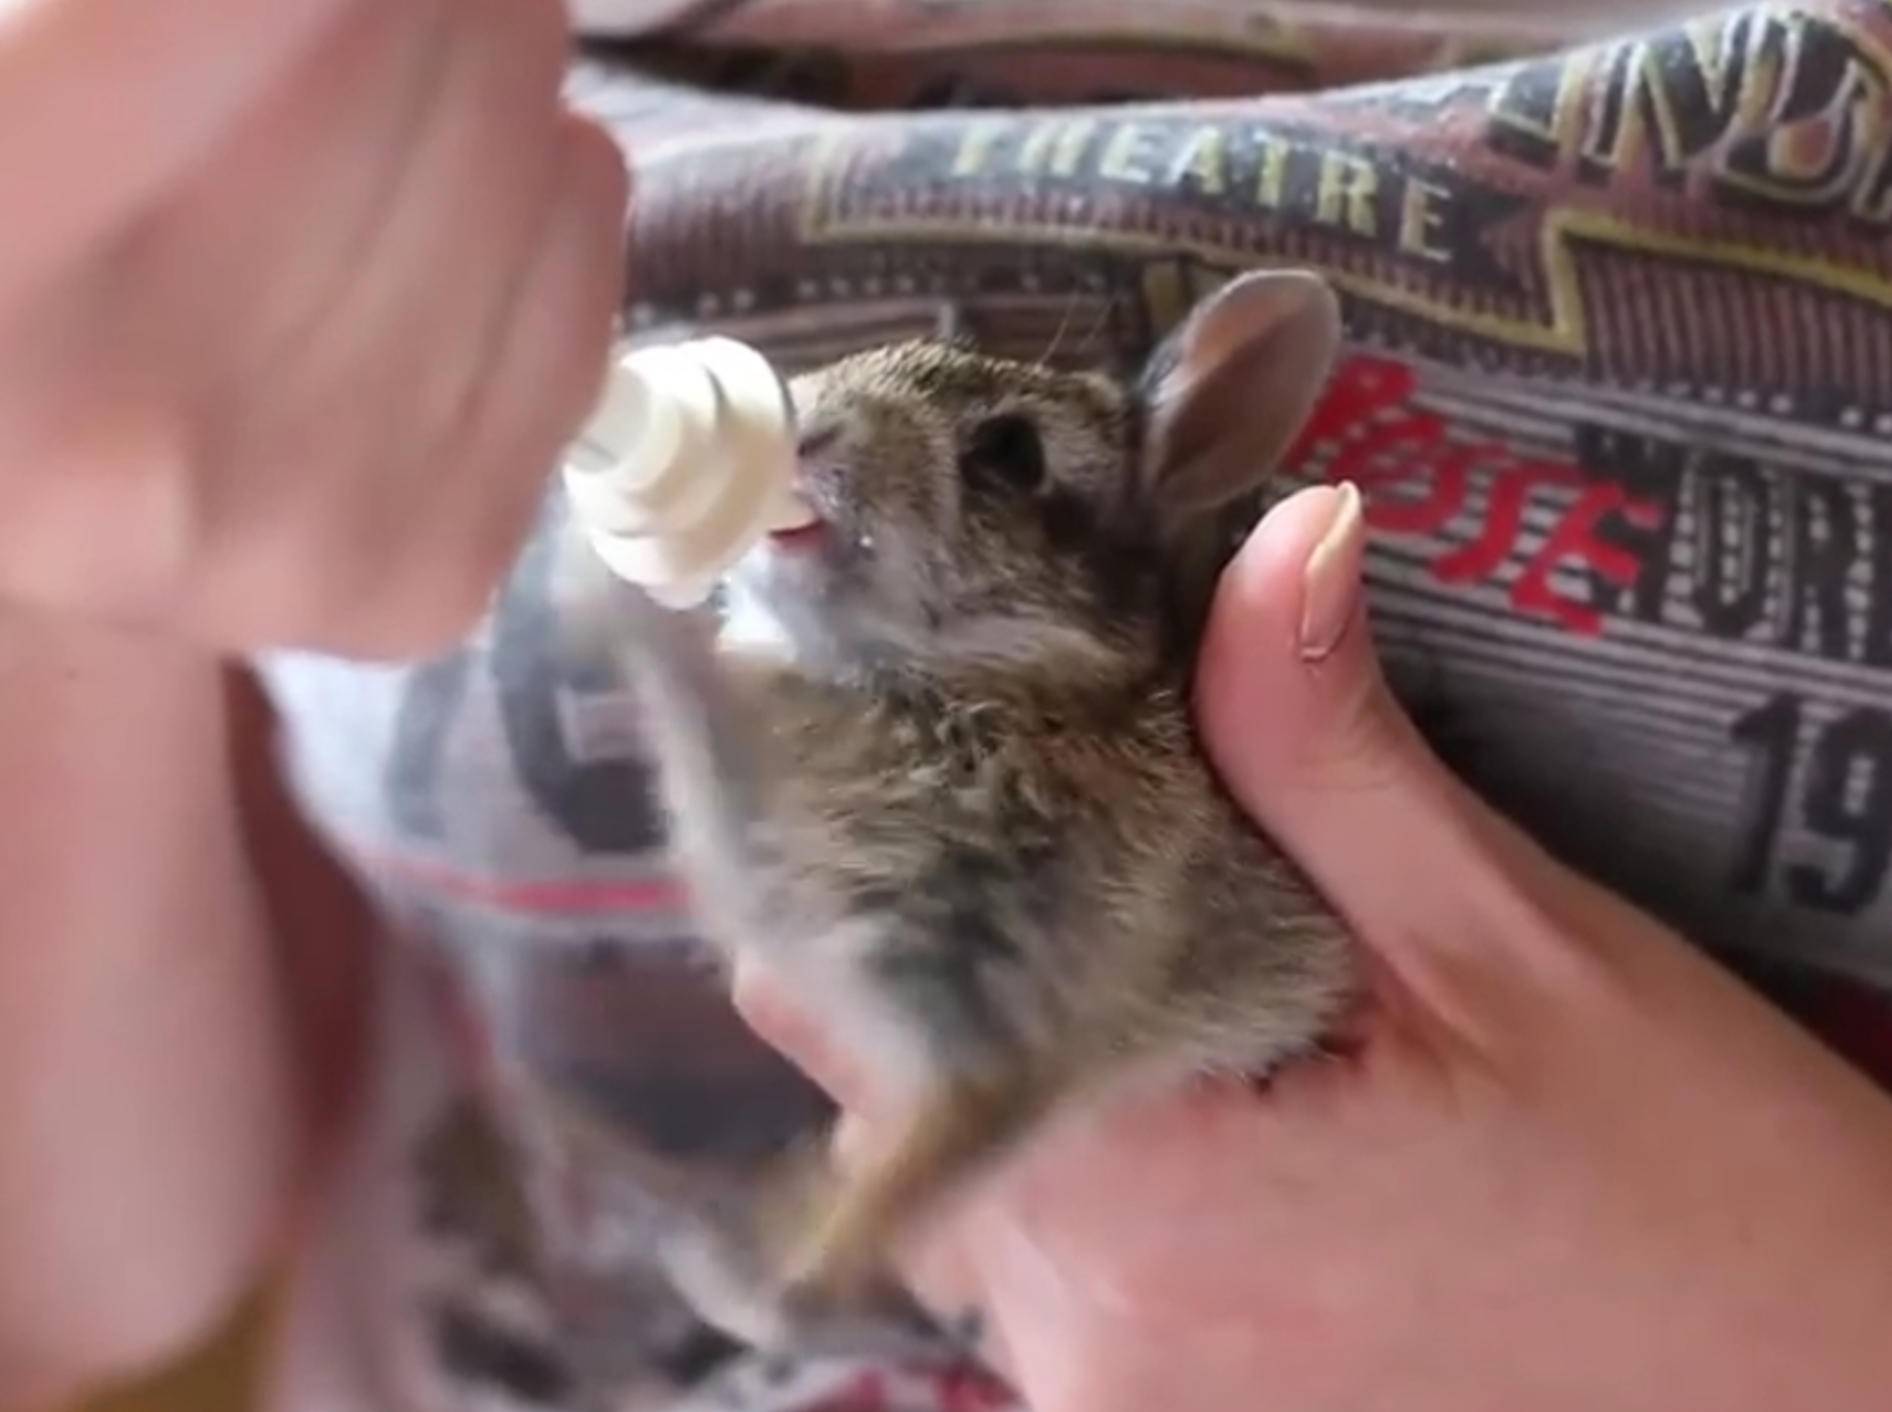 Zuckersüß: Gerettetes Kaninchenbaby strampelt beim Essen – Bild: YouTube / Bunny Chats